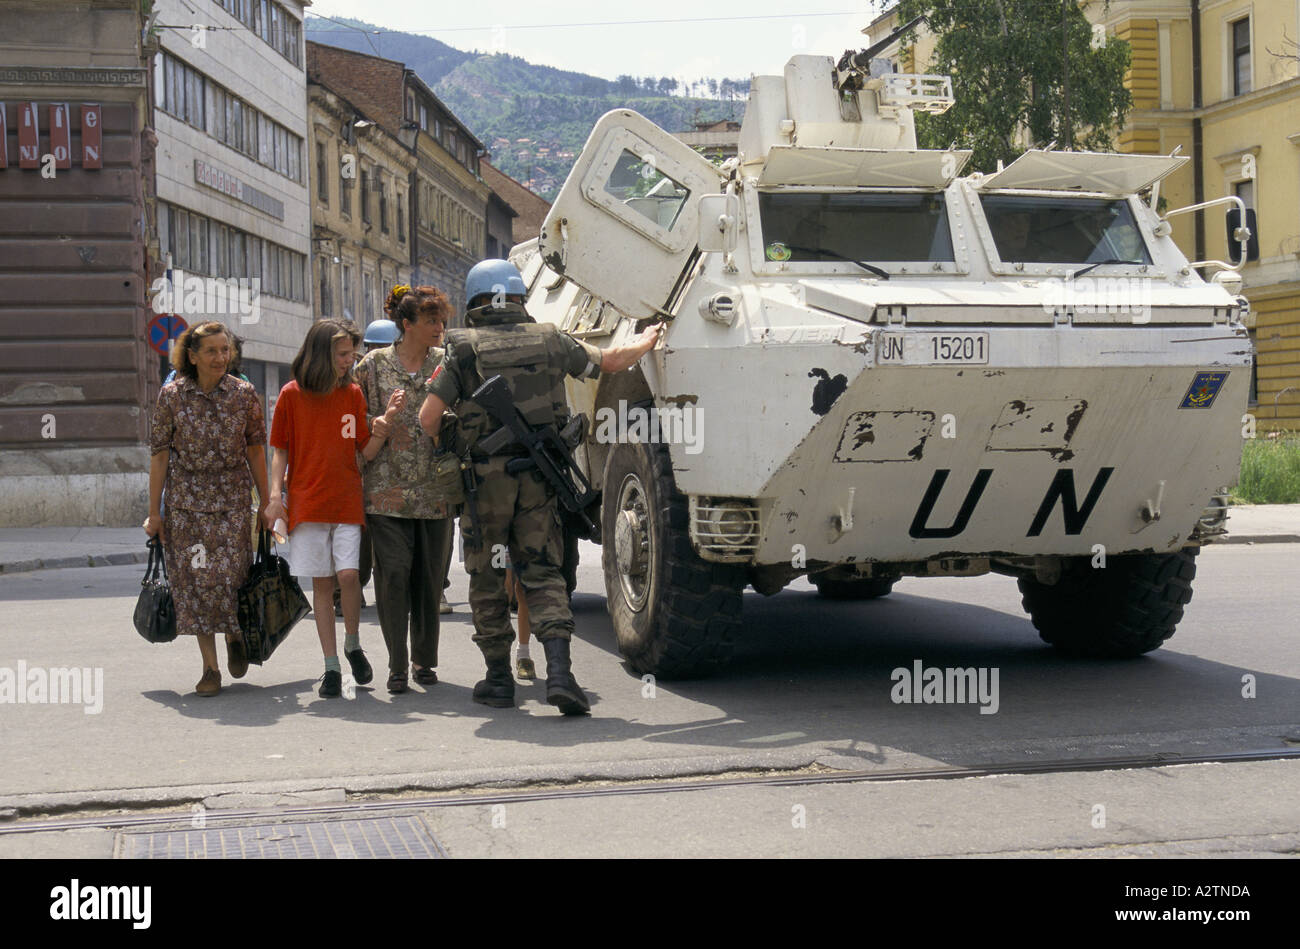 Sarajevo Juni 1995 un Panzern bewaffnete Soldaten Abschirmung Kinder das hohe Alter Scharfschützen anfällig Straßen überqueren Stockfoto